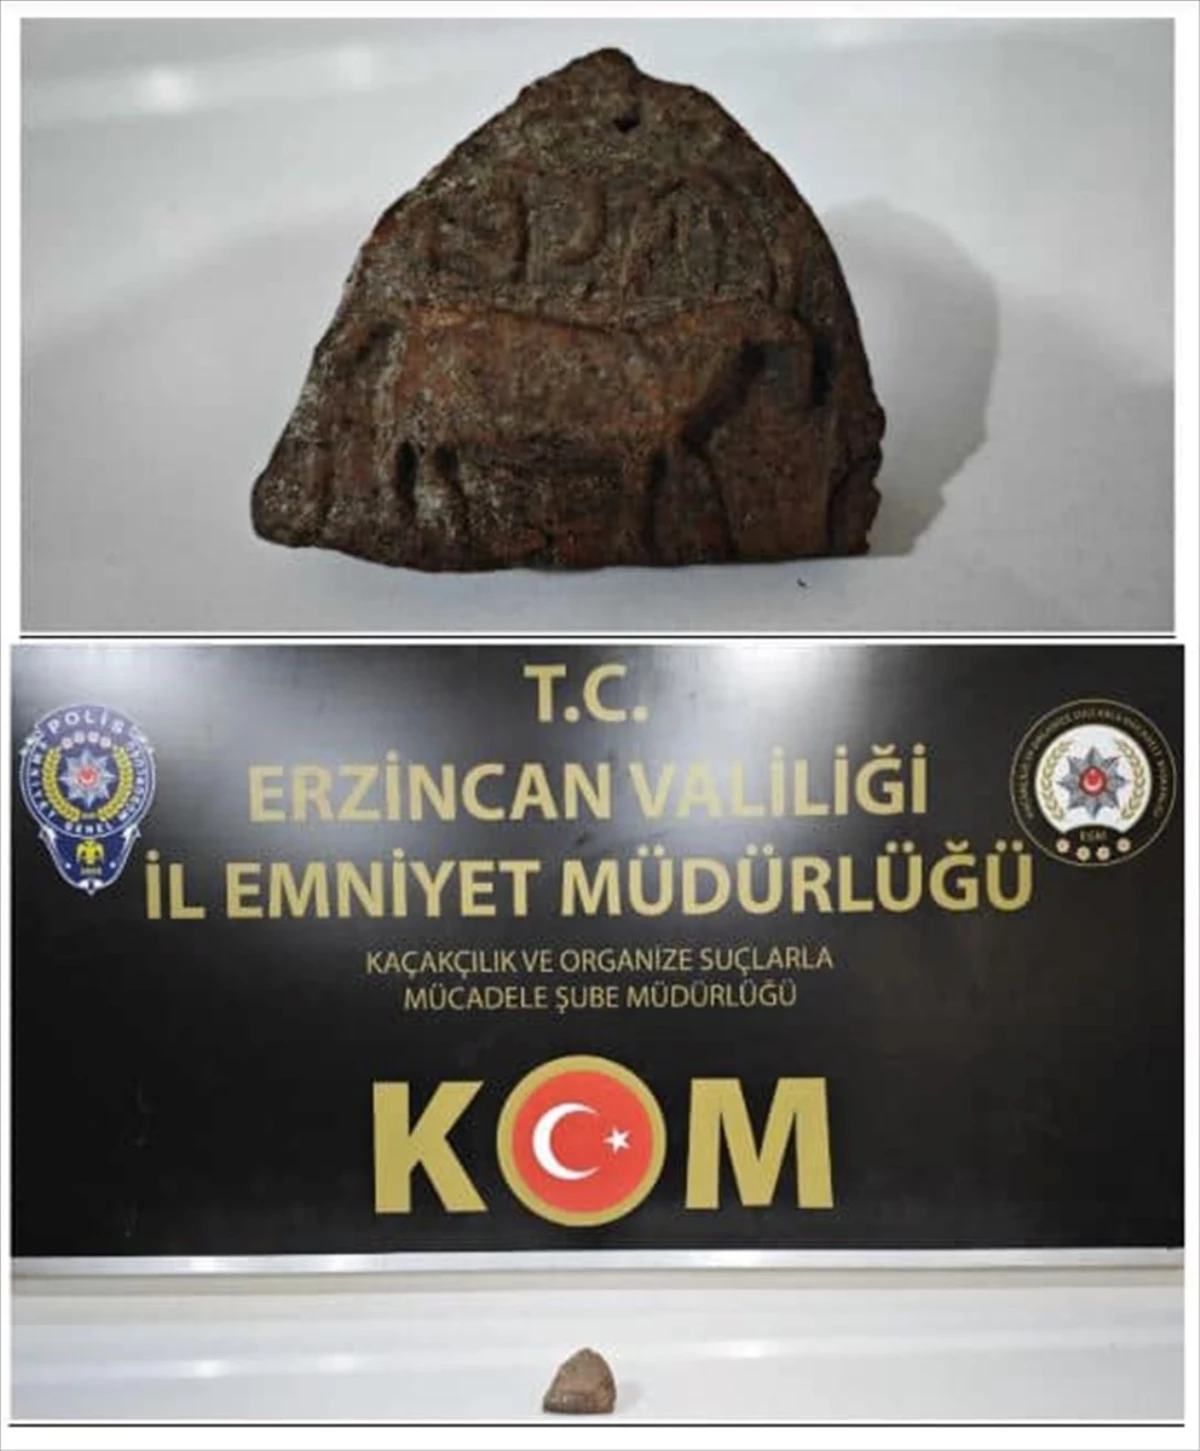 Erzincan’da tarihi eser kaçakçılığı operasyonunda 2 şüpheli gözaltına alındı